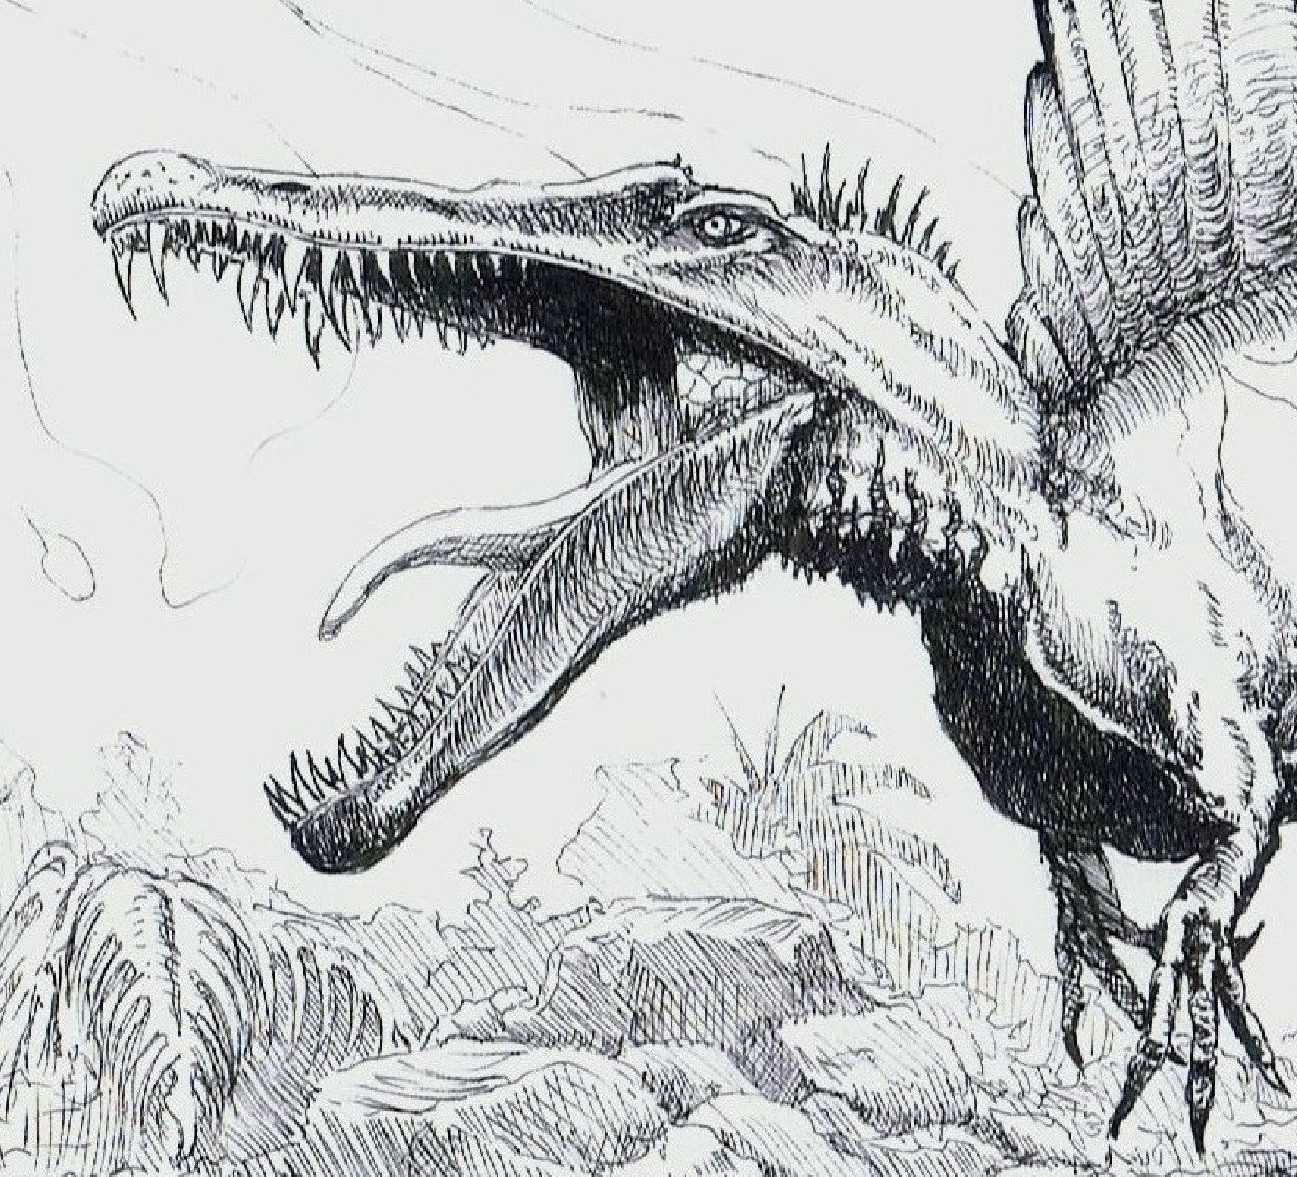 Spinosaurus Drawing at Explore